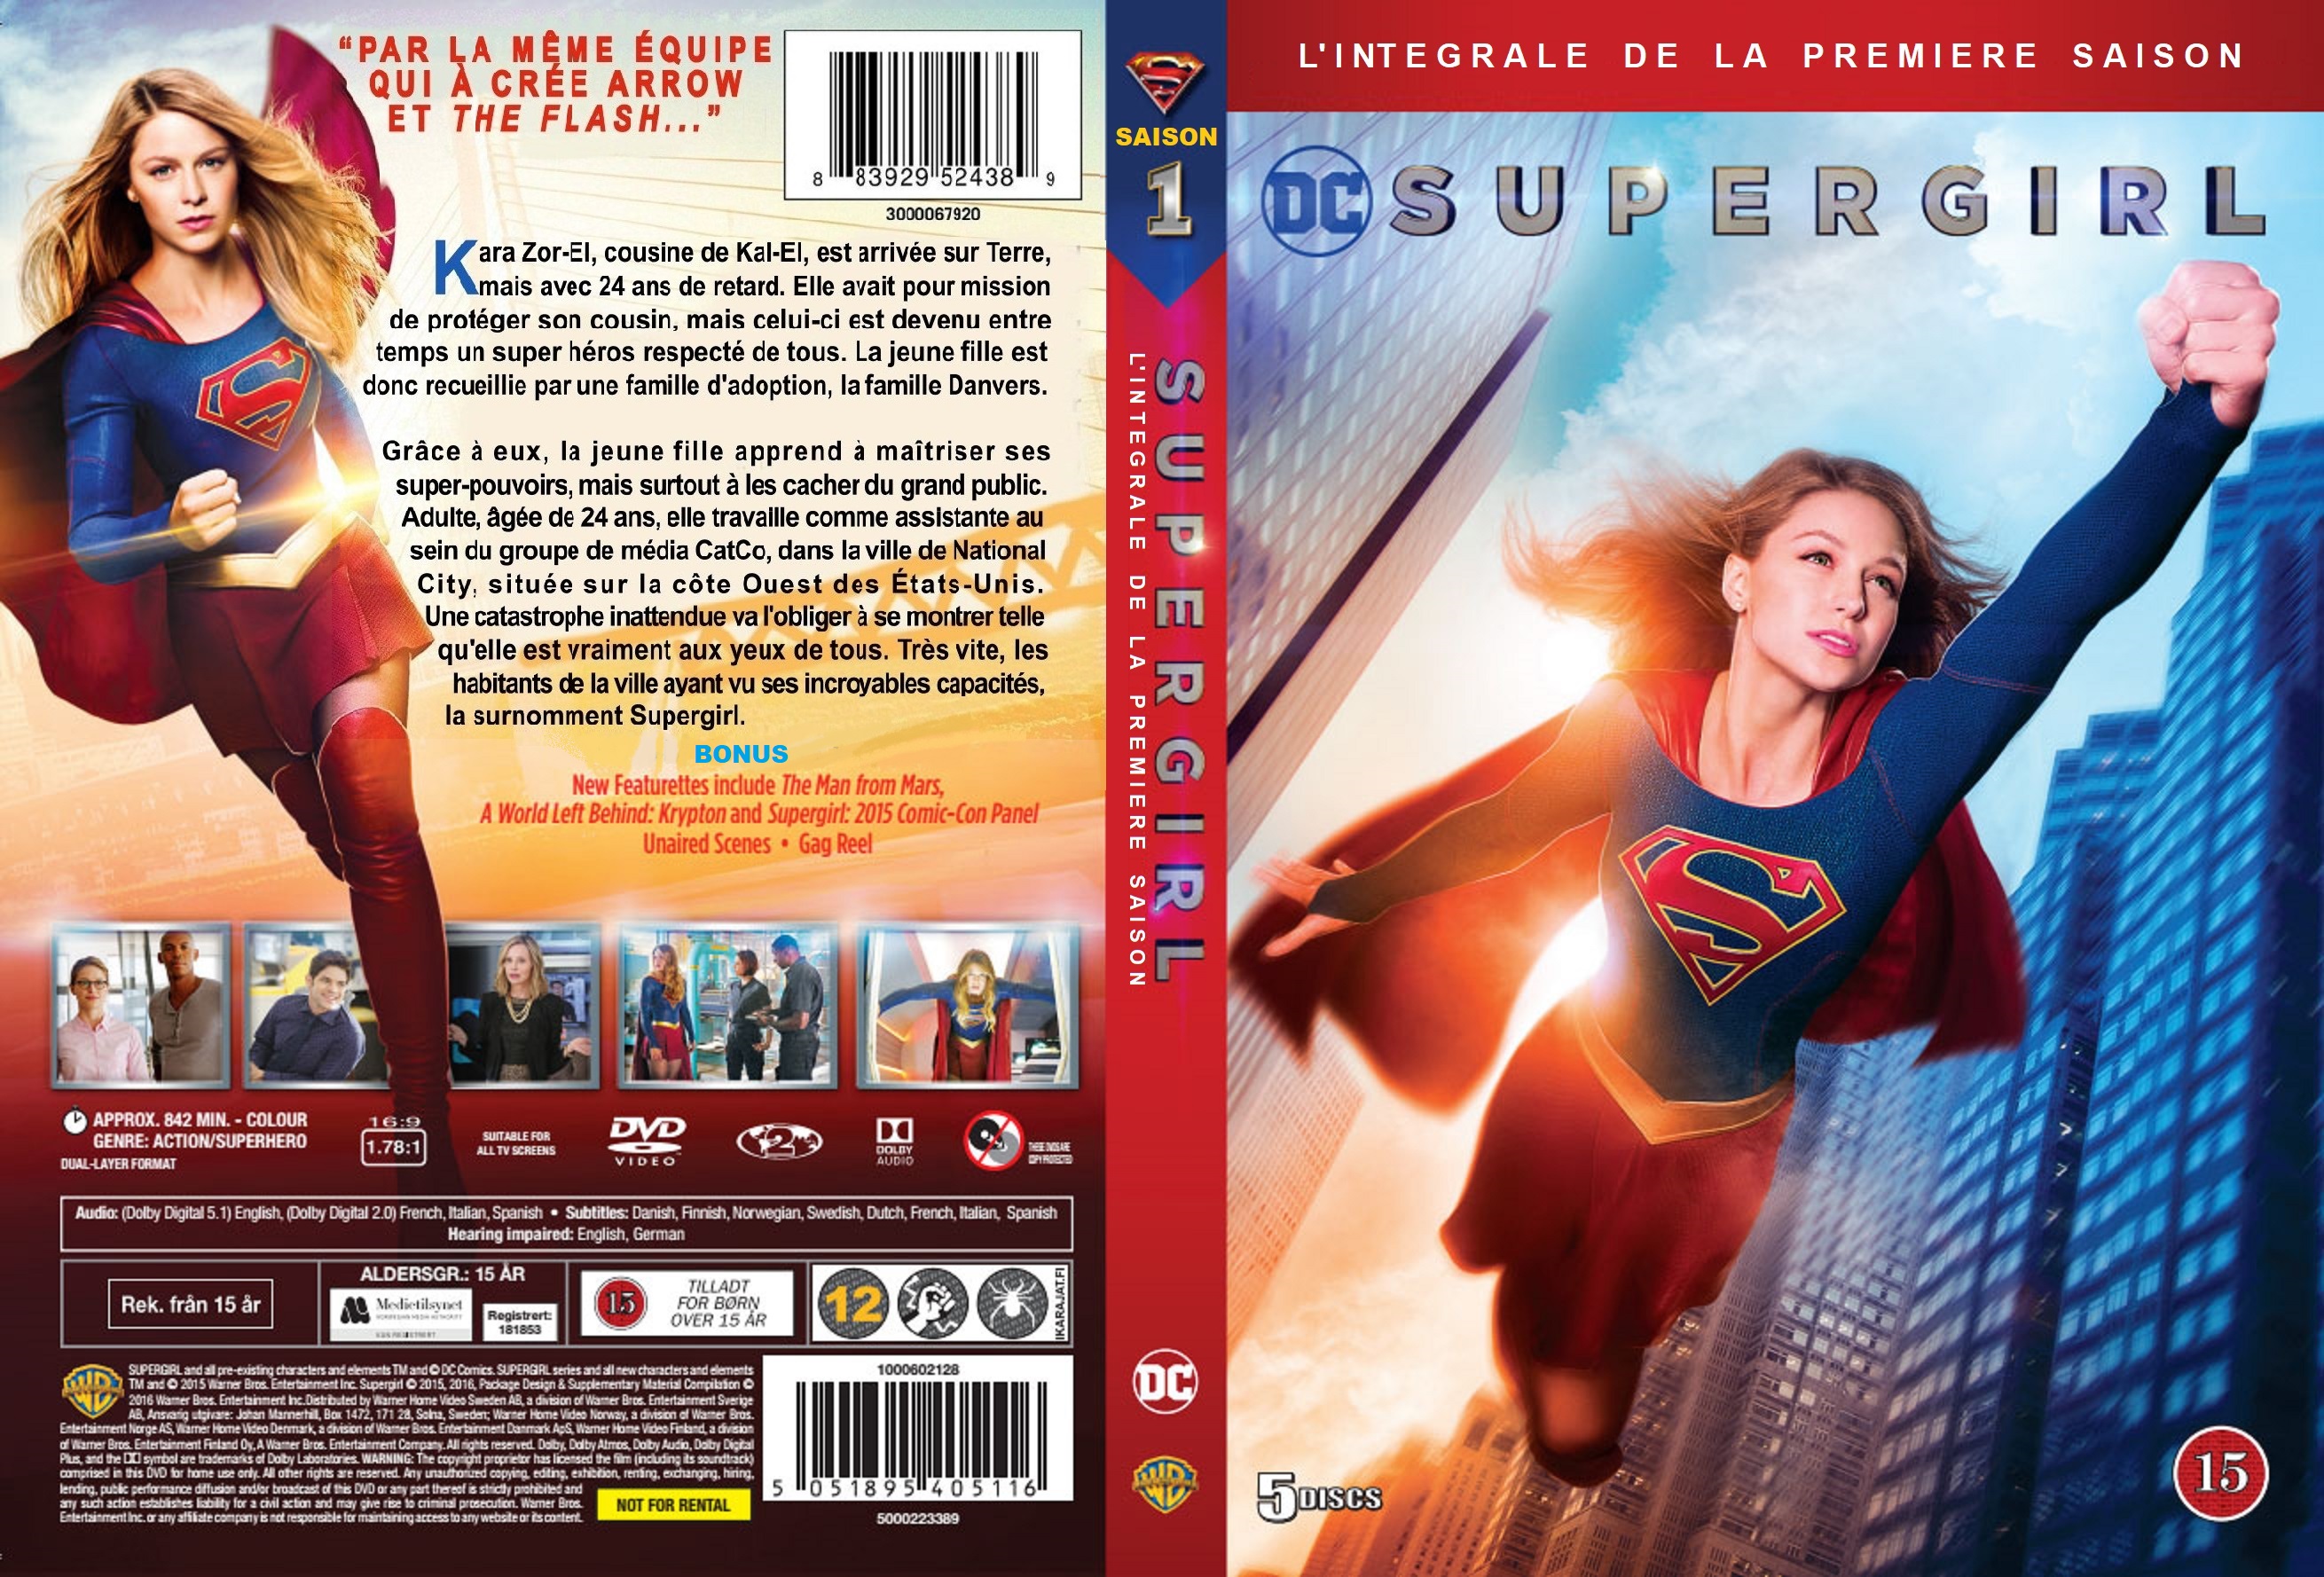 Jaquette DVD Supergirl saison 1 custom v2